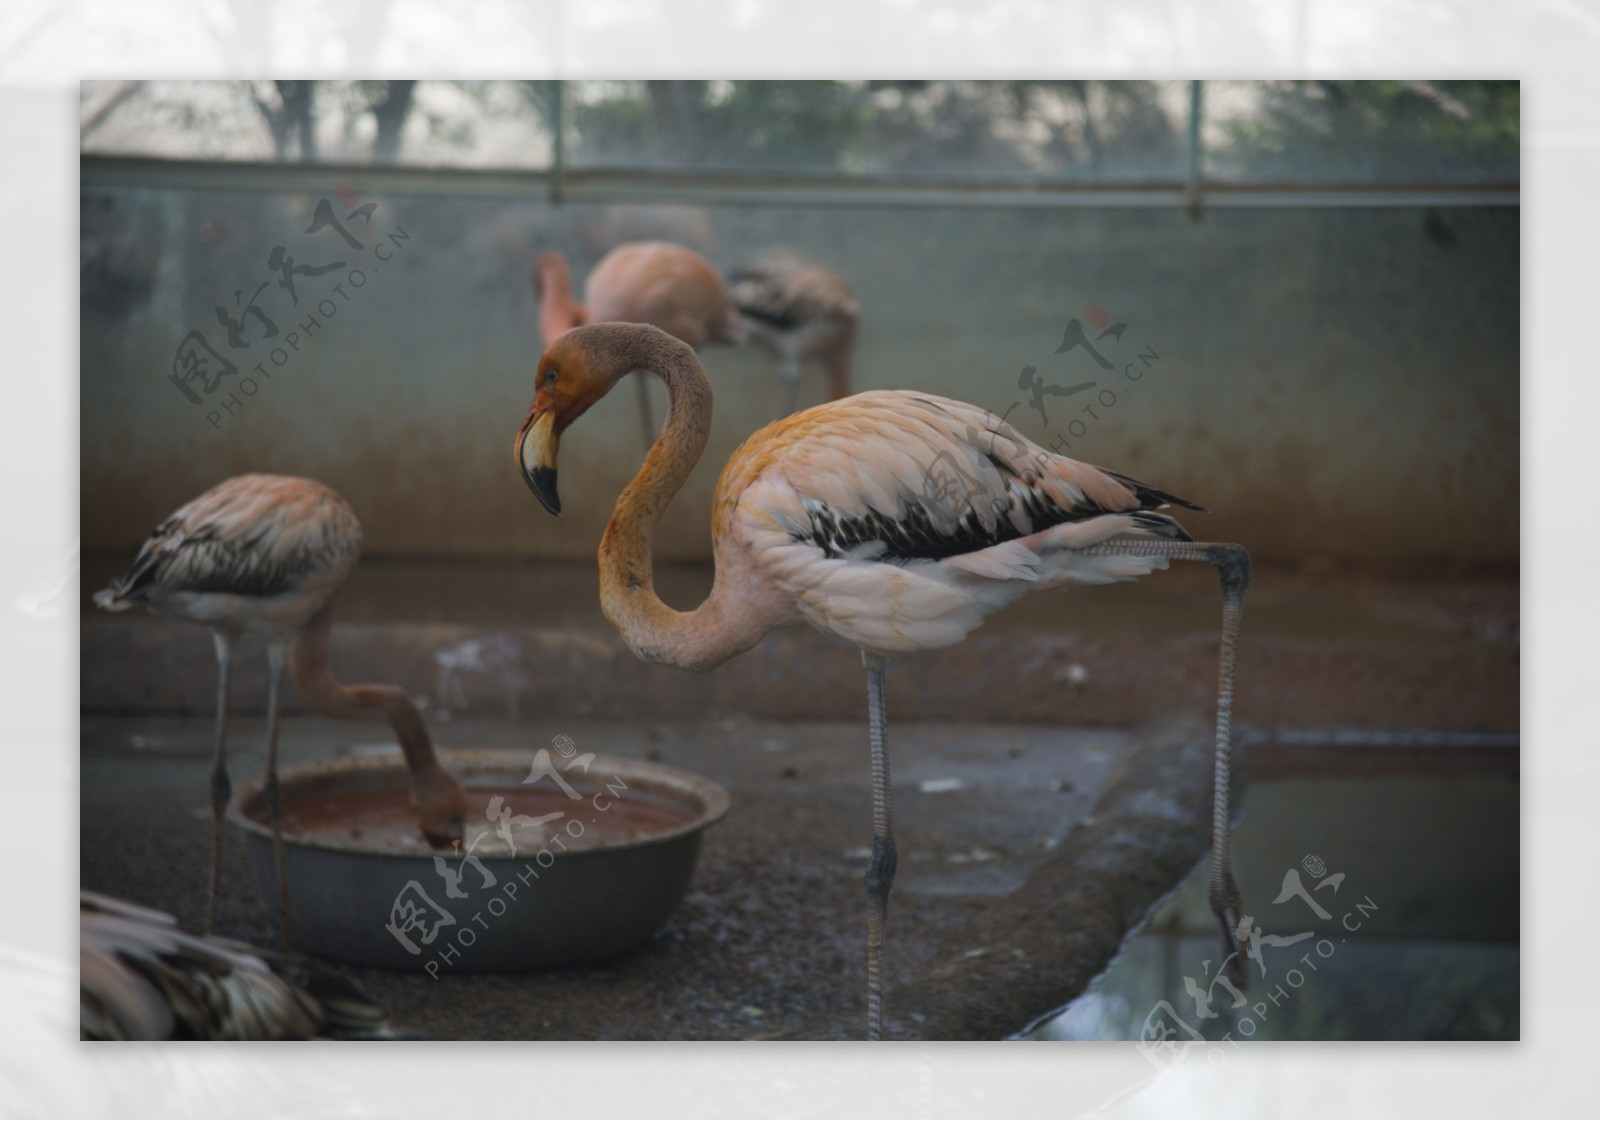 郑州动物园摄影之火焰鸟